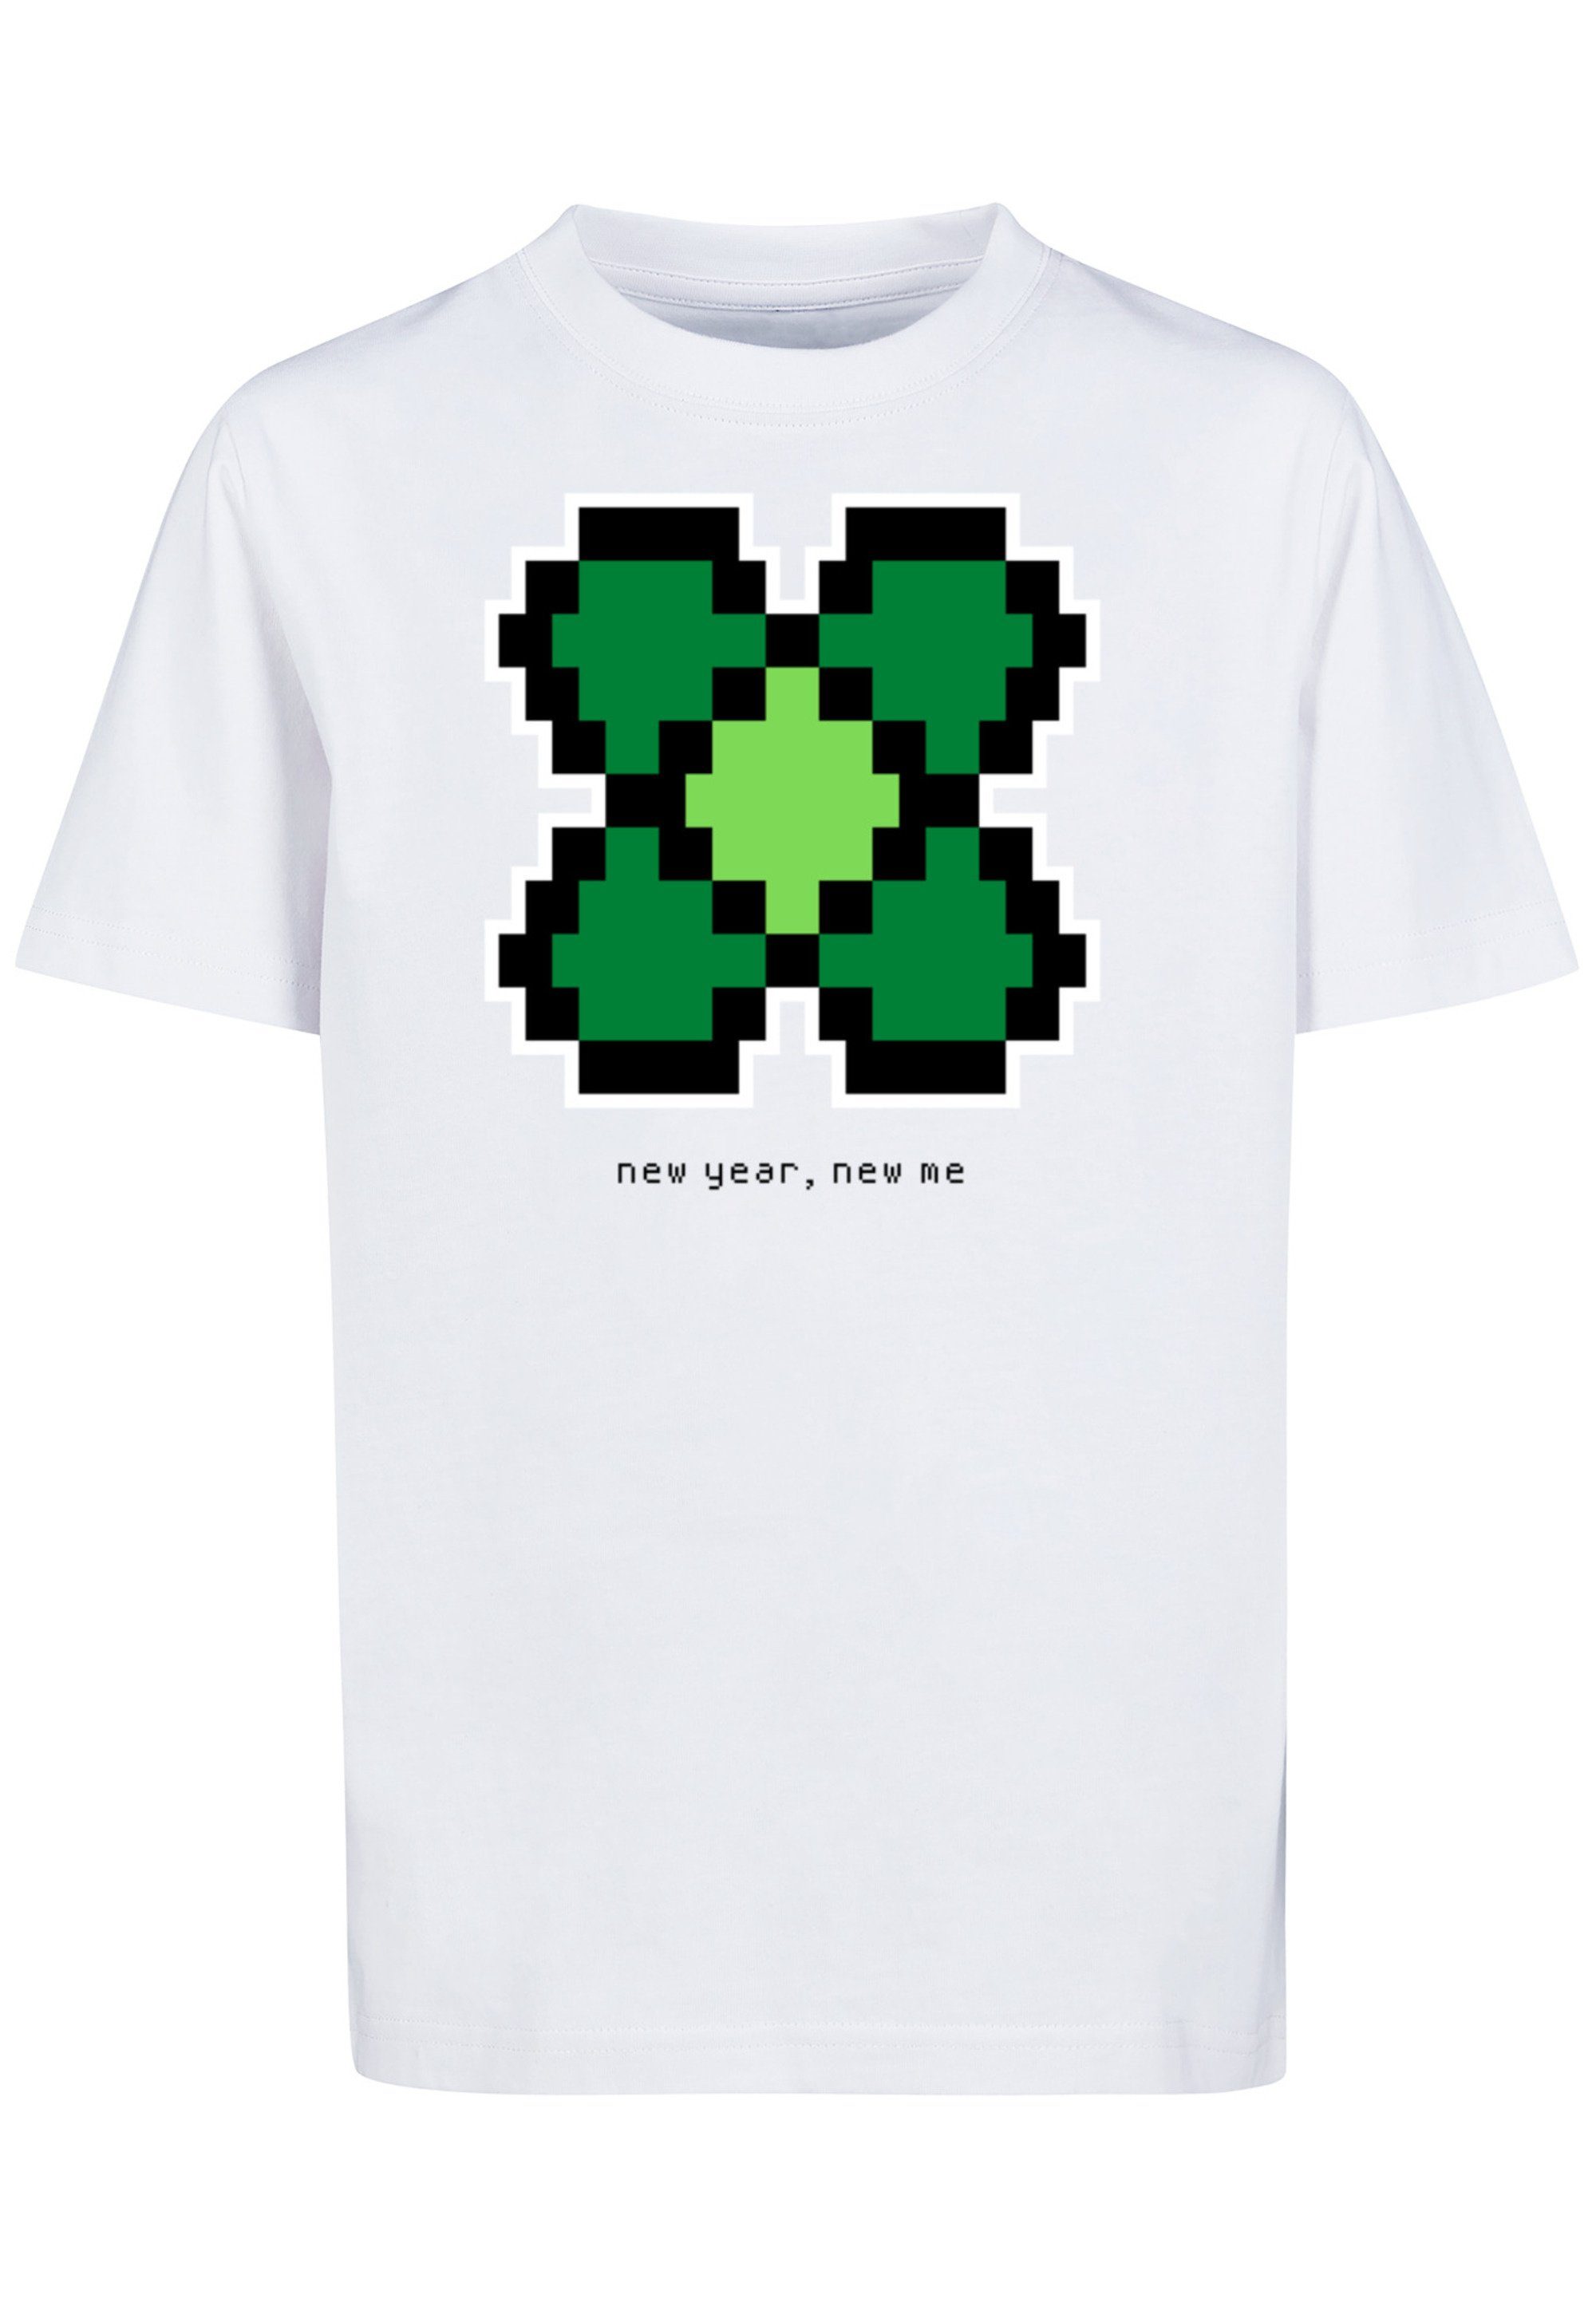 Kleeblatt Print New Silvester T-Shirt Year Pixel F4NT4STIC Happy weiß